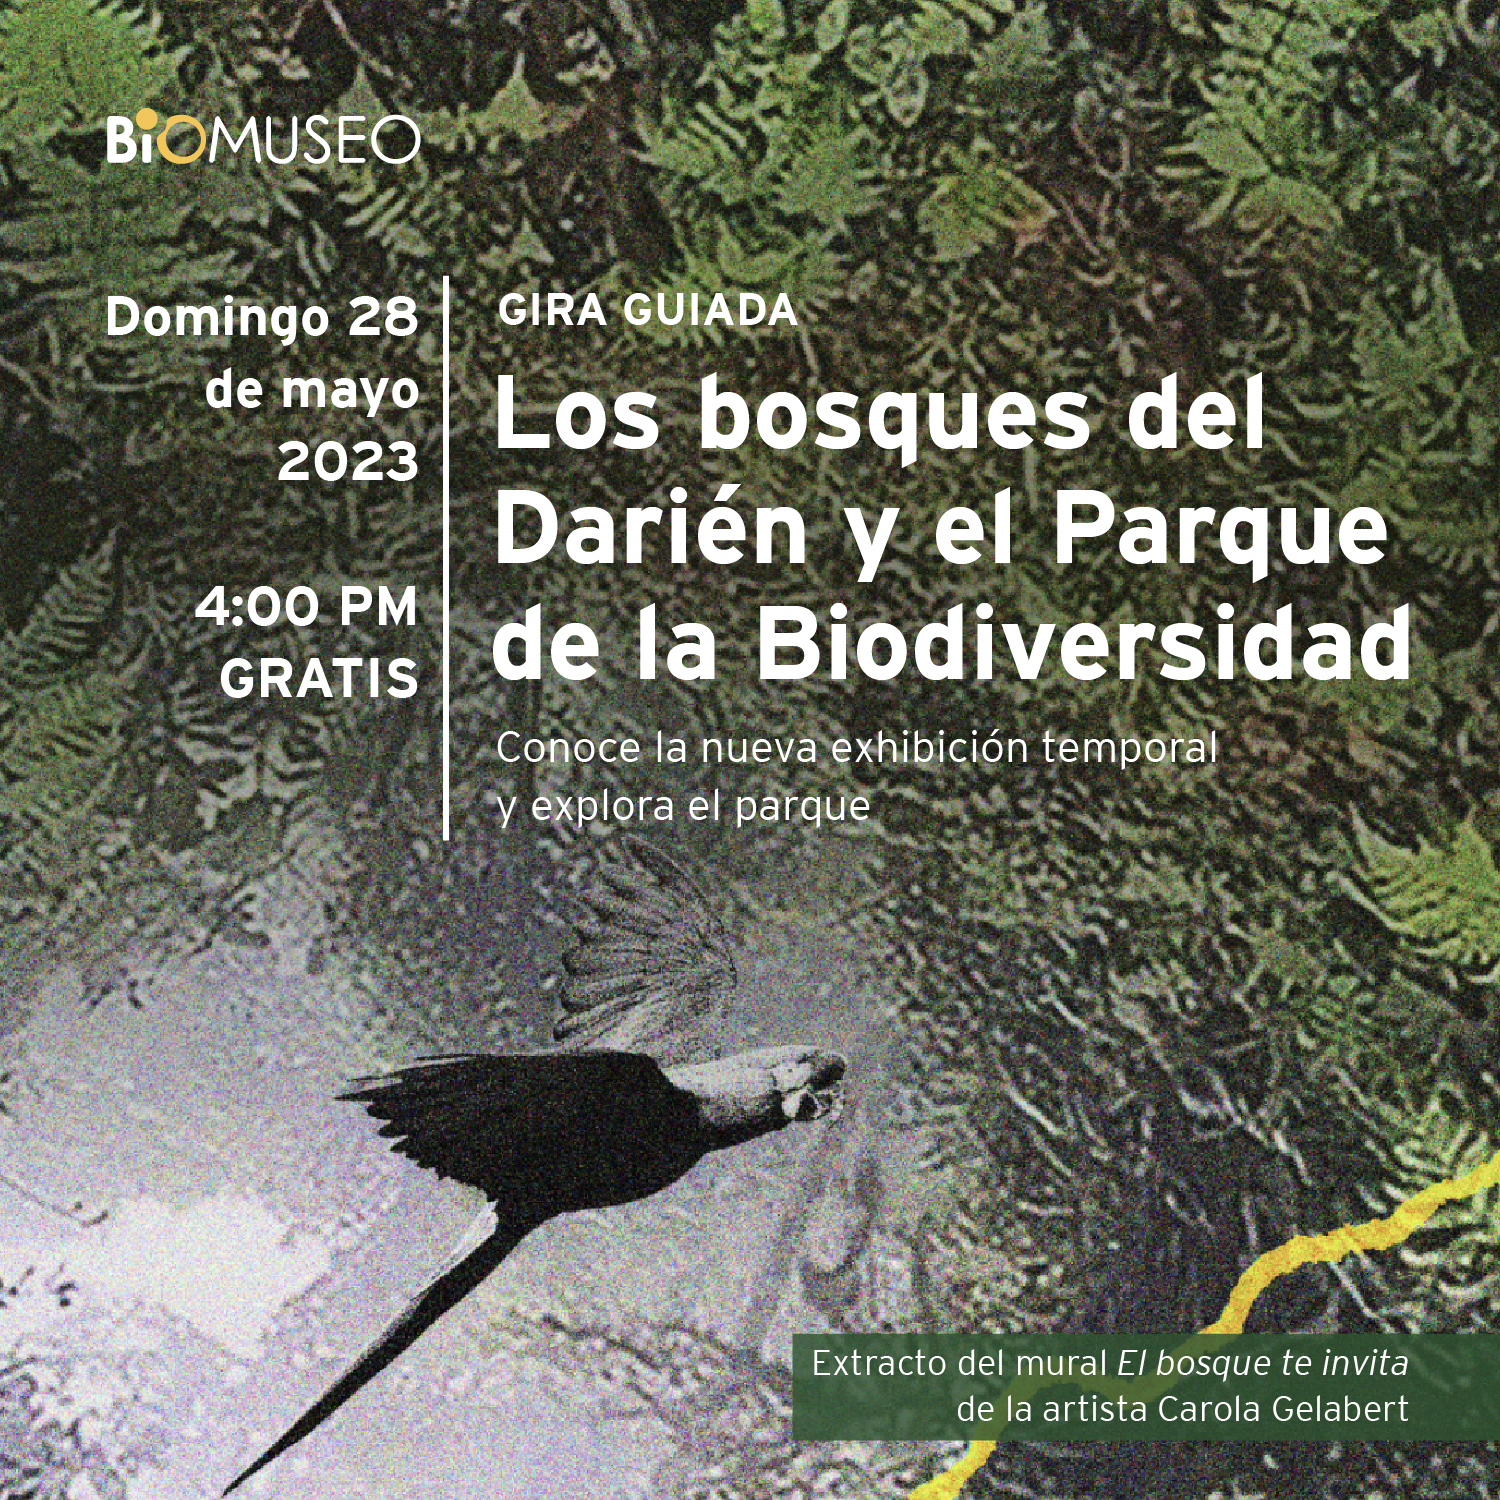 Gira guiada: Los bosques del Darién y el Parque de la Biodiversidad